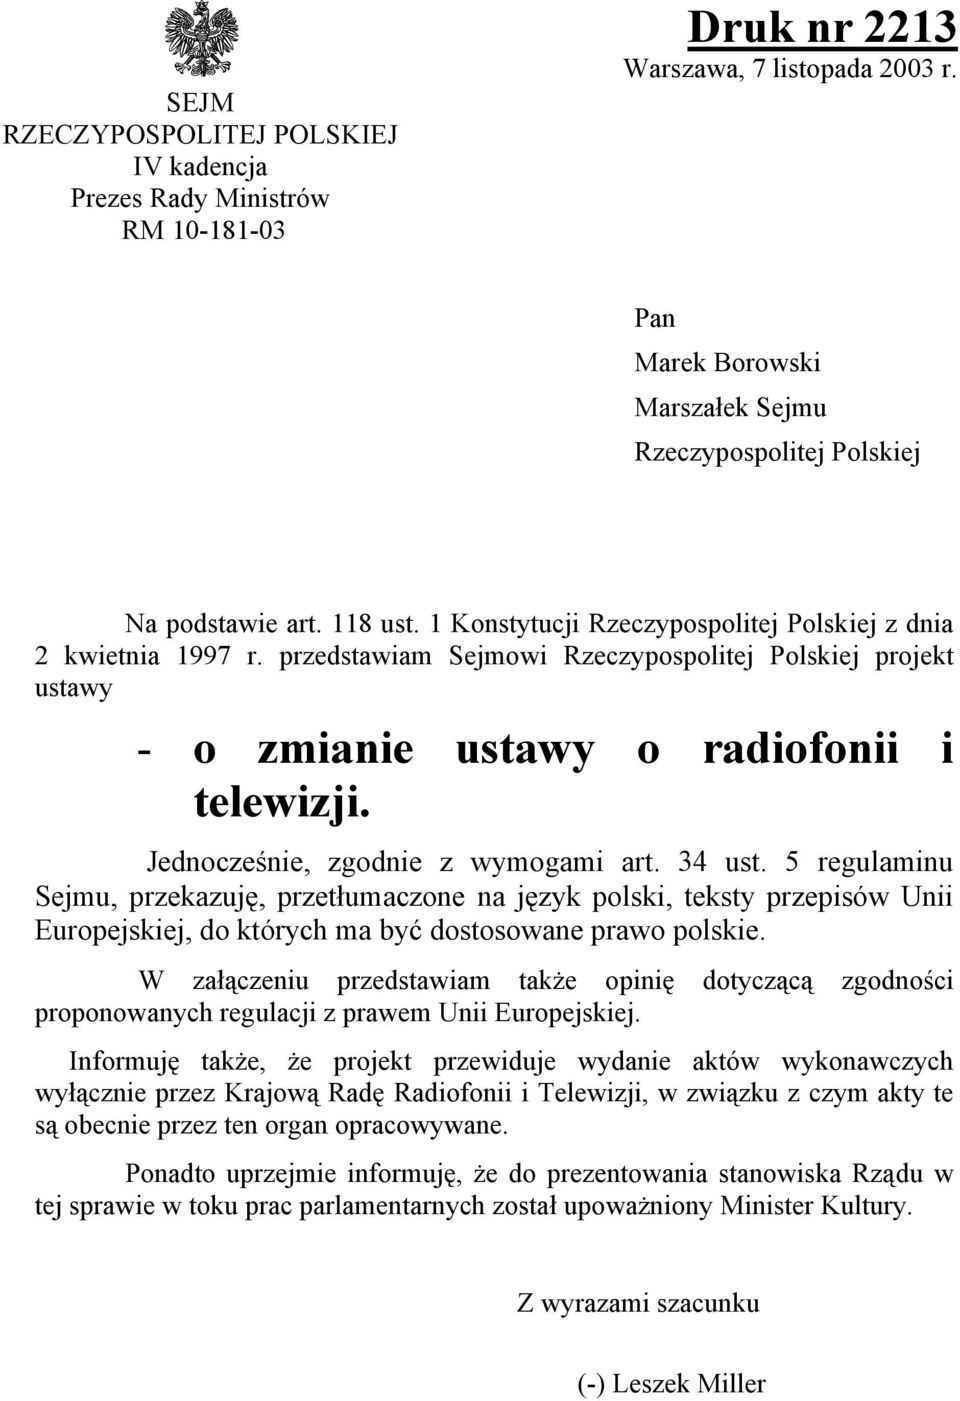 Jednocześnie, zgodnie z wymogami art. 34 ust. 5 regulaminu Sejmu, przekazuję, przetłumaczone na język polski, teksty przepisów Unii Europejskiej, do których ma być dostosowane prawo polskie.